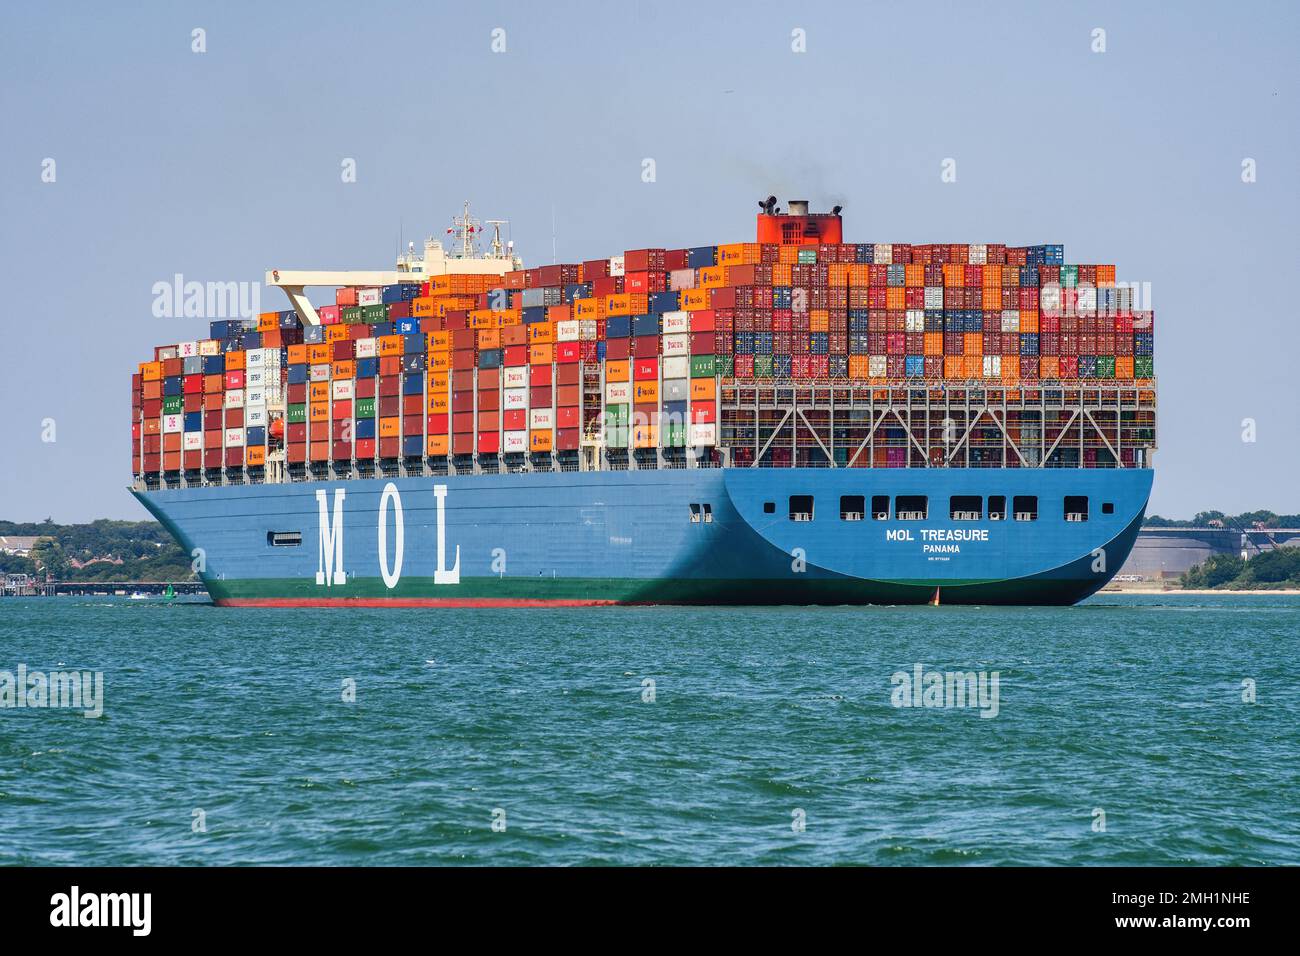 MOL Treasure ist ein Containerschiff der Klasse 20.000 TEU, das von Mitsui O.S.K. betrieben wird Linien des Fe2-Service zwischen Asien und Europa. Stockfoto